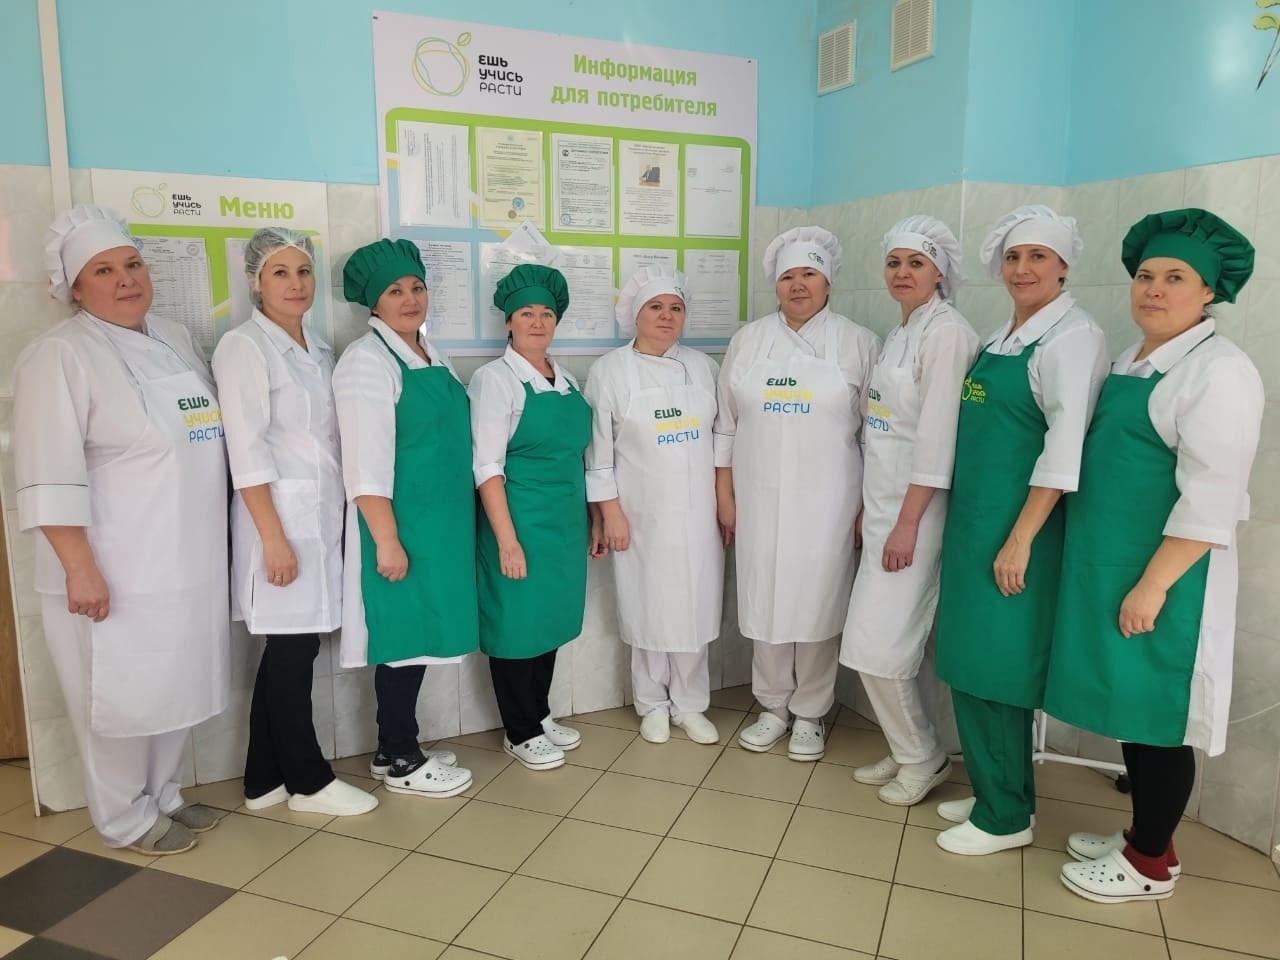 Три школьные столовые из Башкирии победили во всероссийском конкурсе